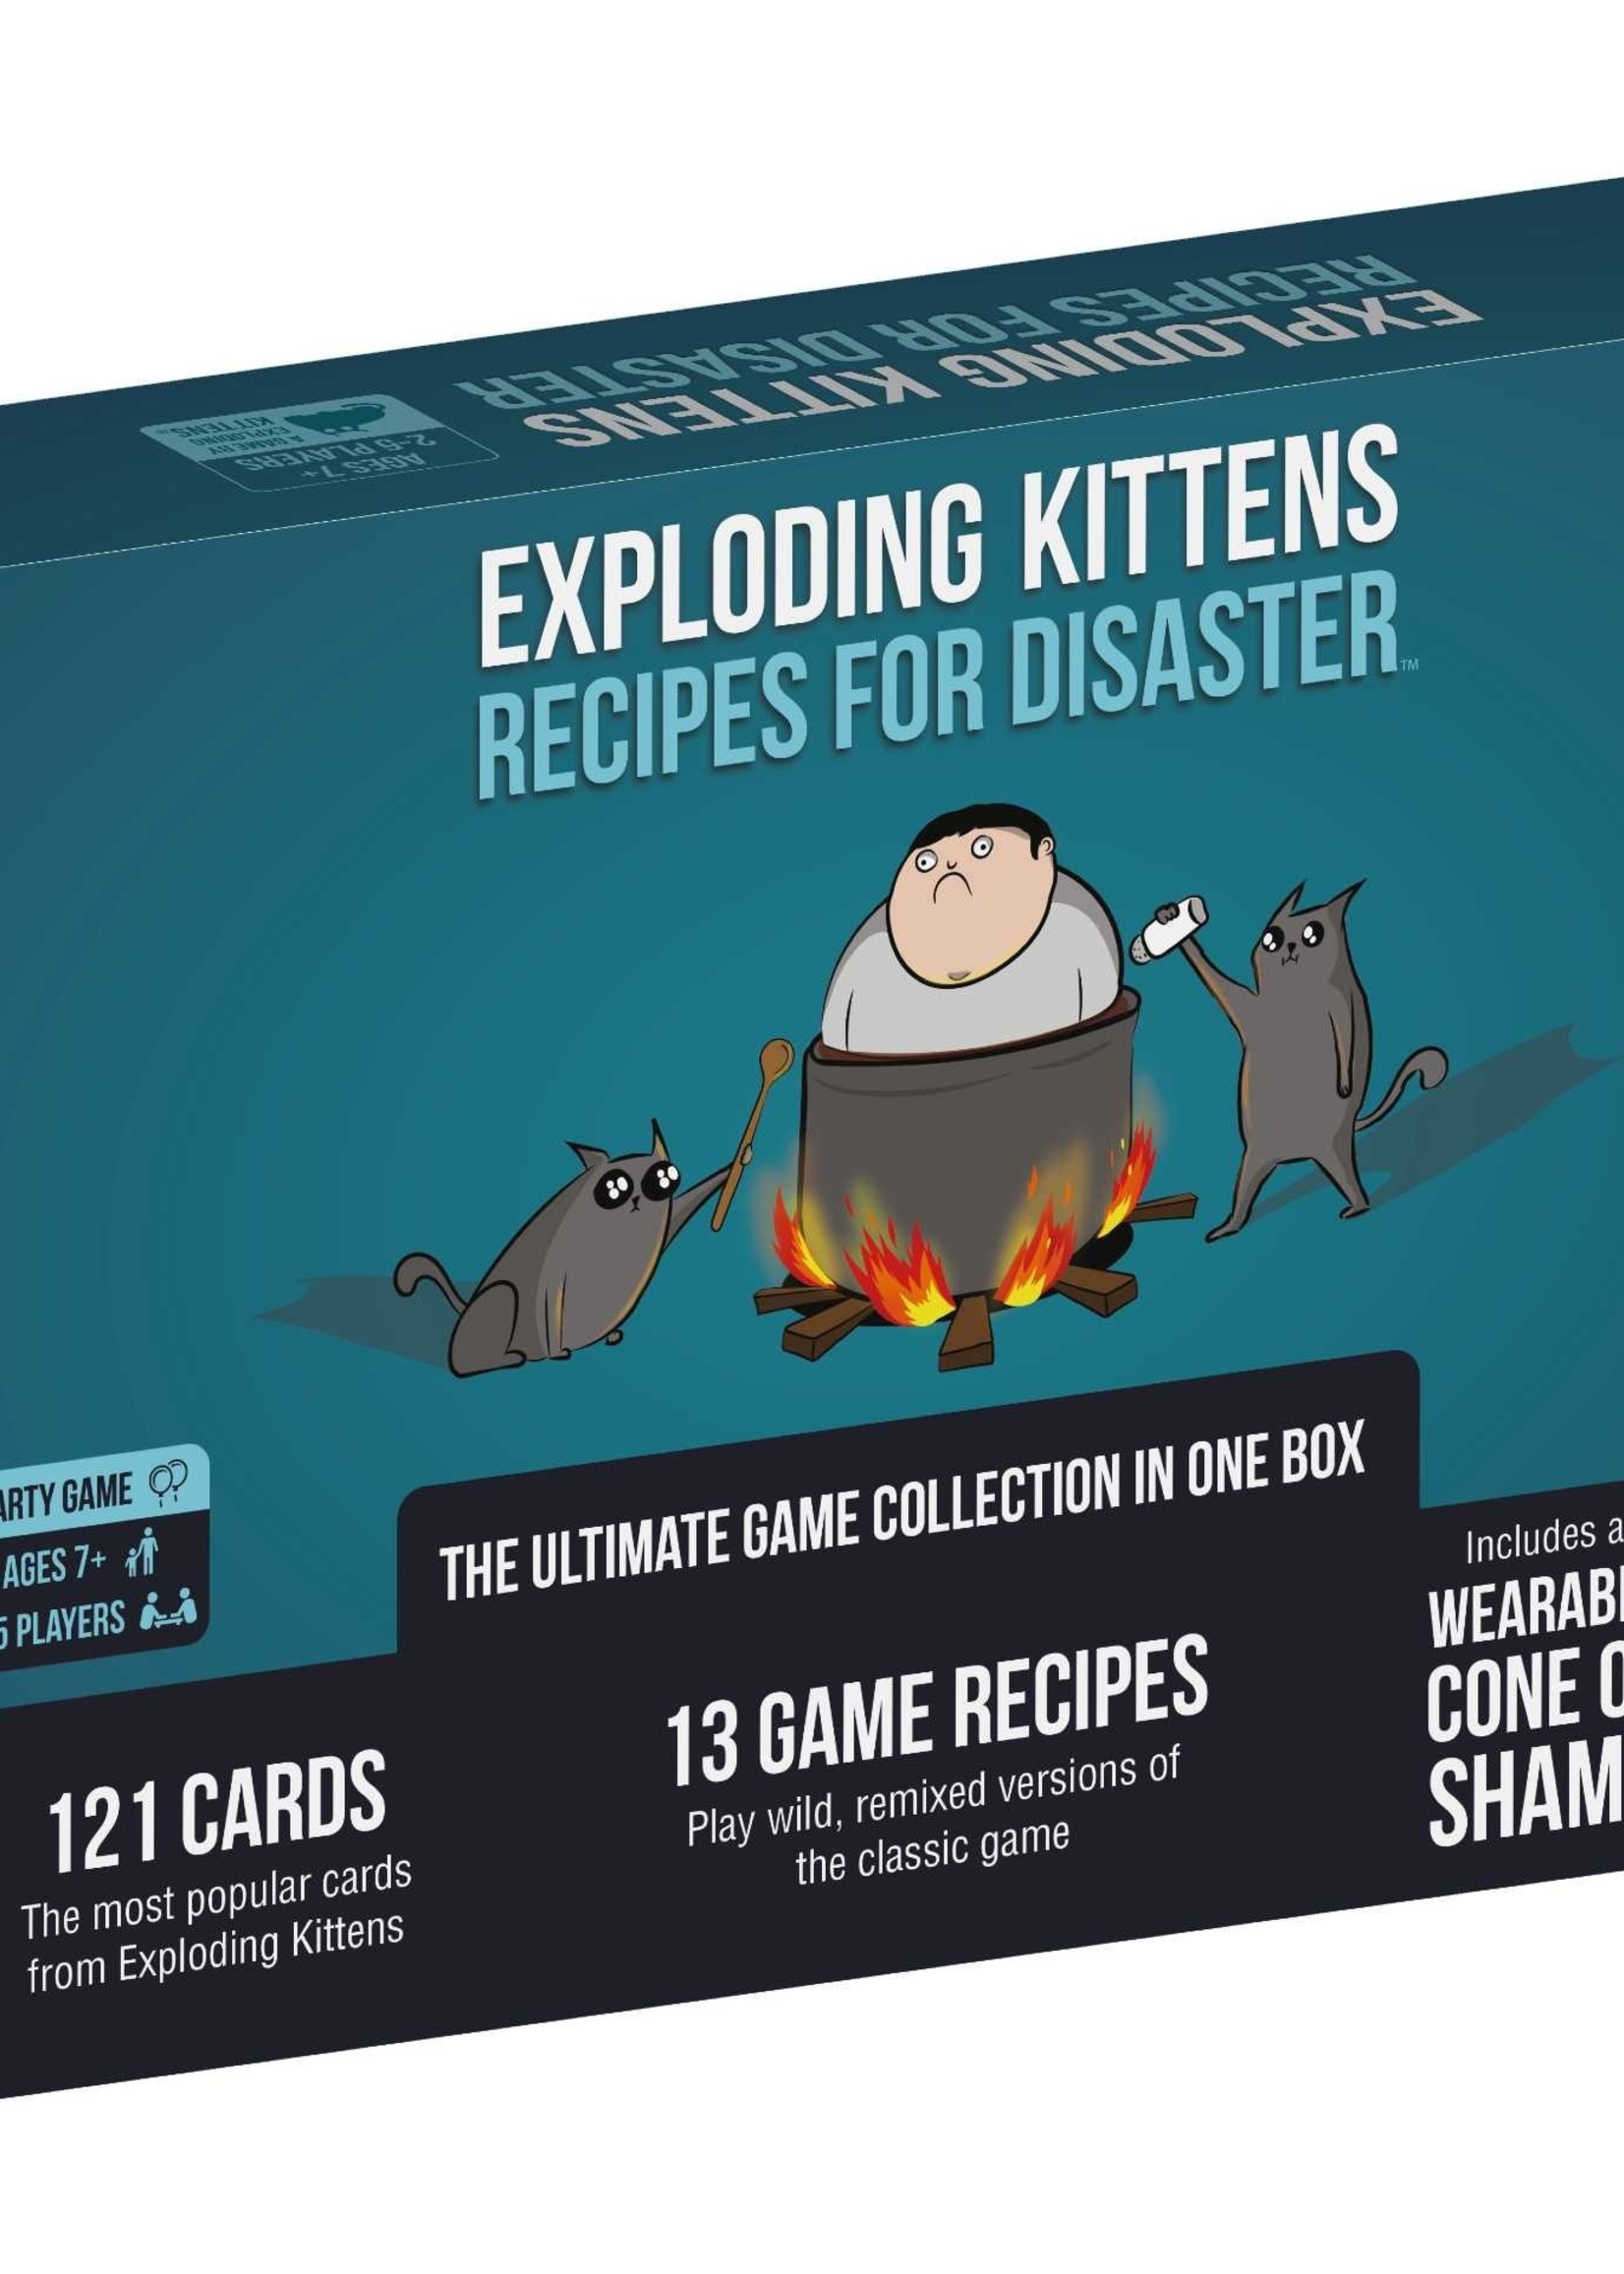 exploding kittens Exploding kittens - Recipes for disaster (EN)